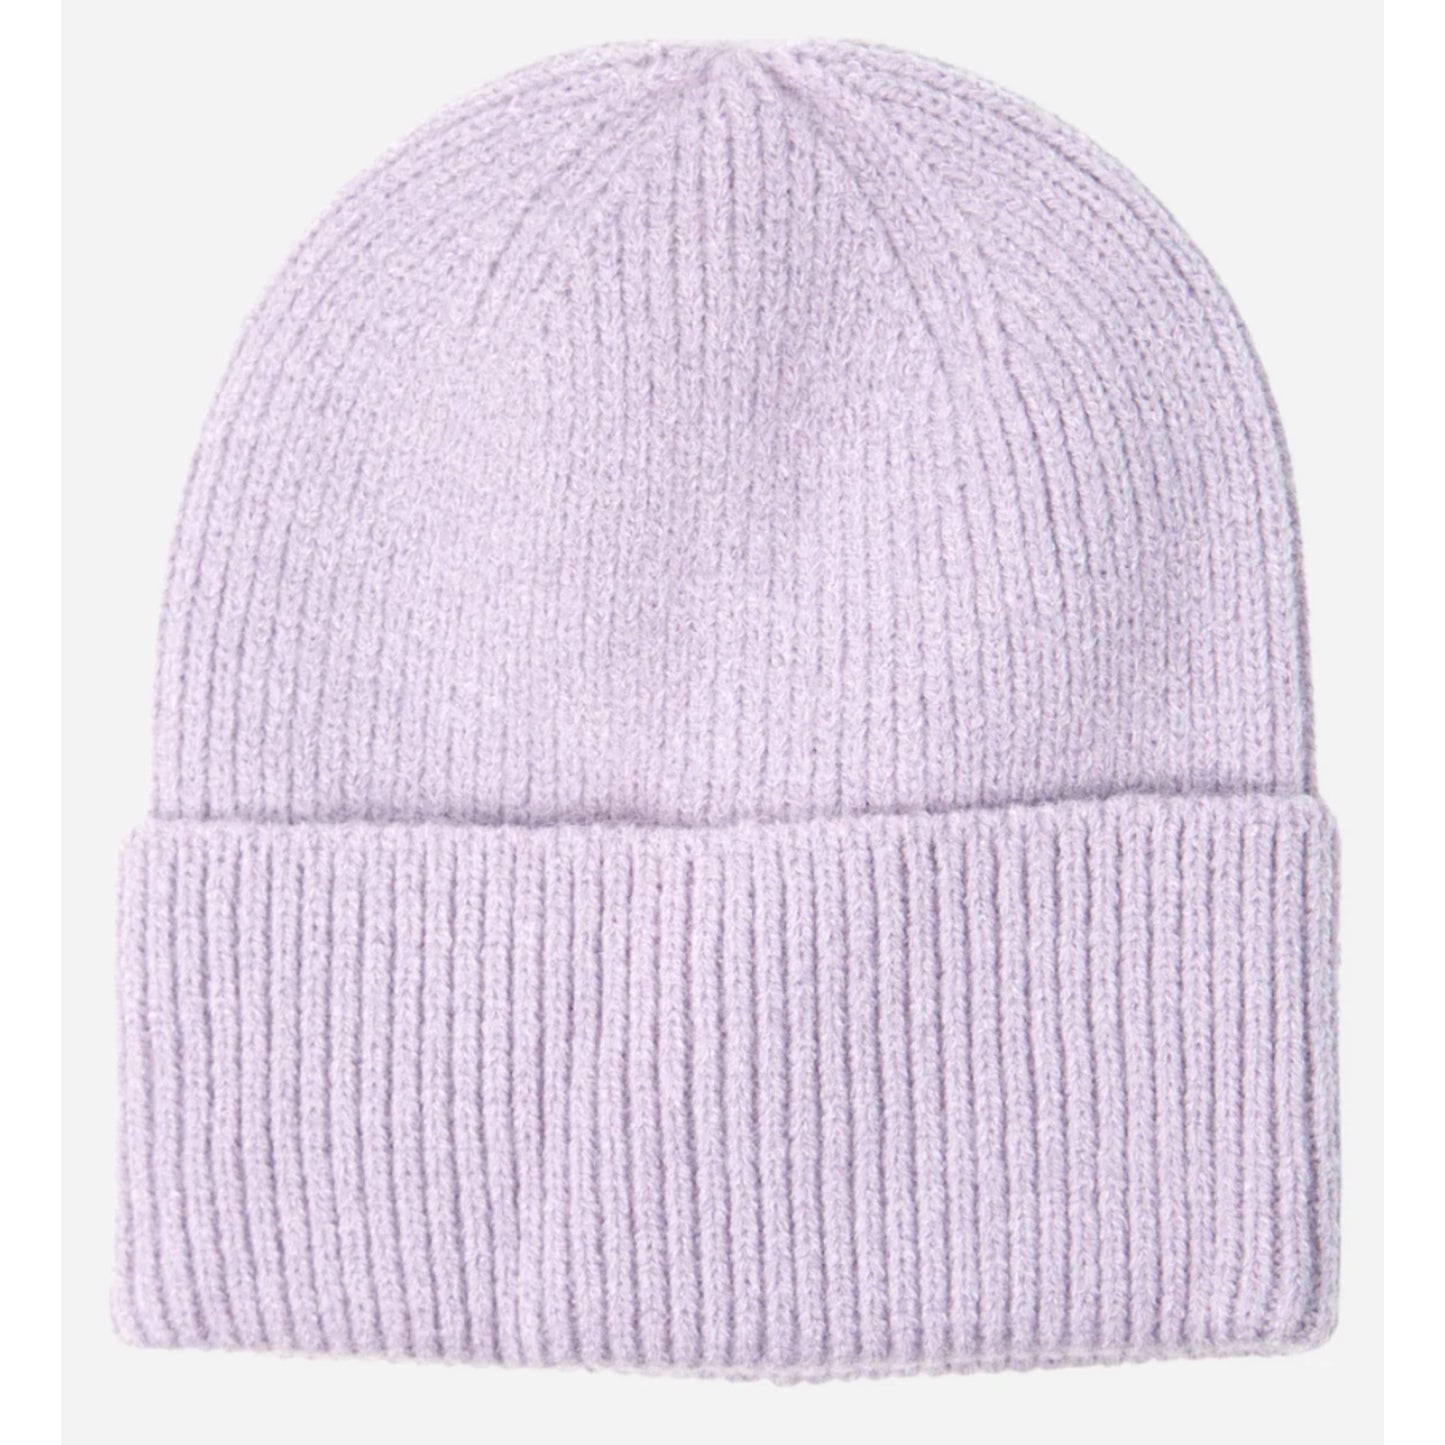 Lilac Beanie Hat